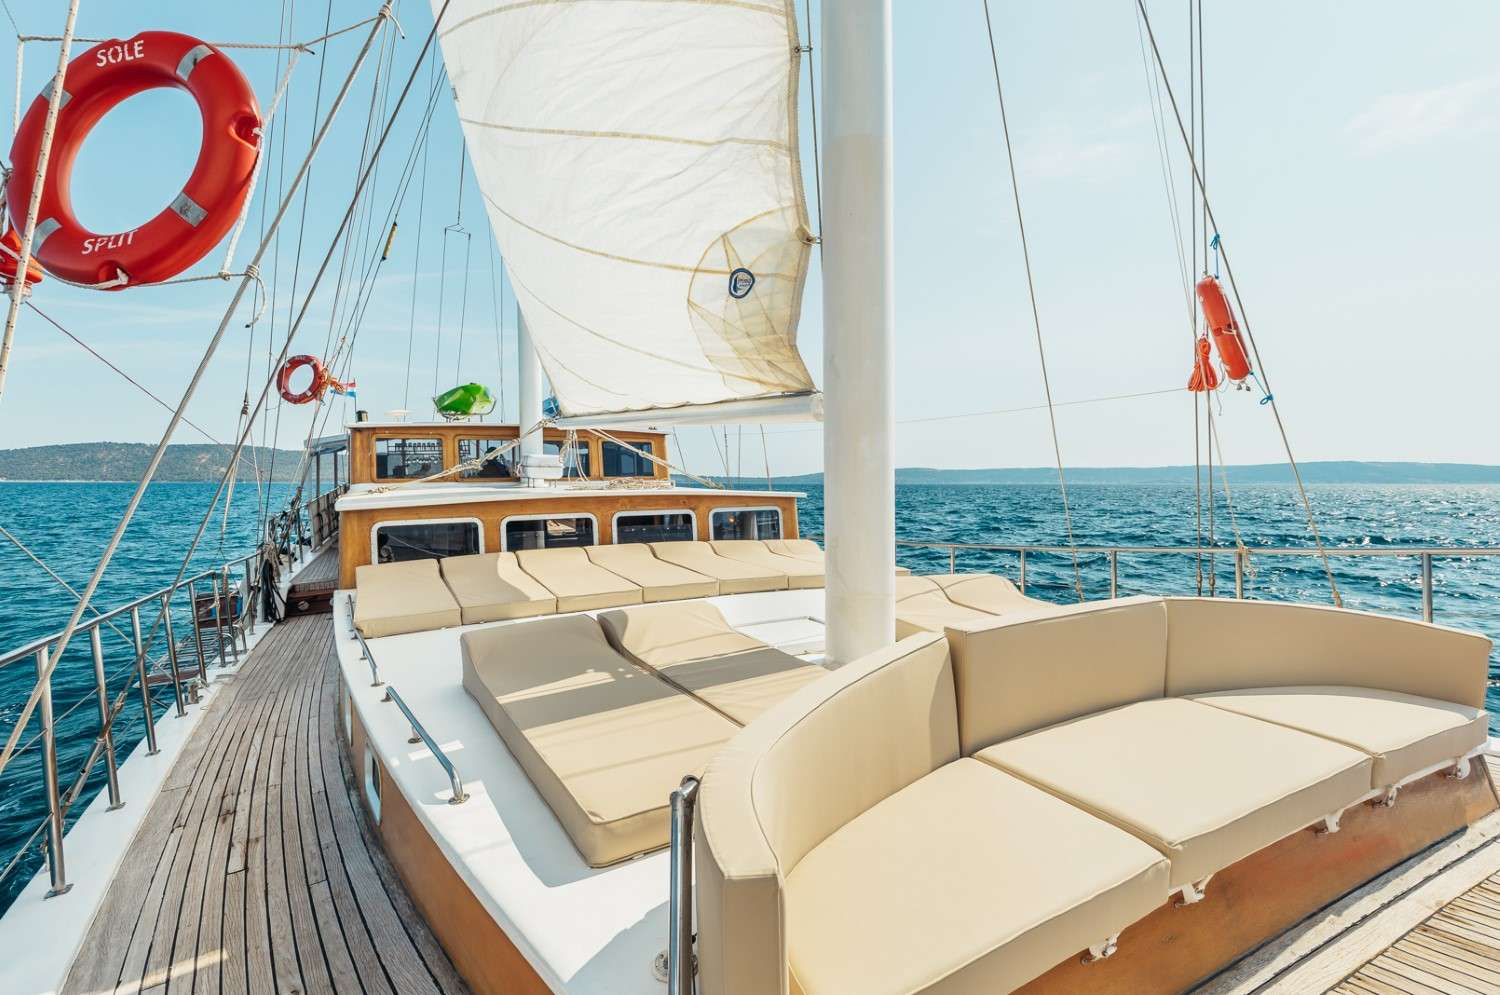 Sole  - Yacht Charter Opatija & Boat hire in Croatia 5